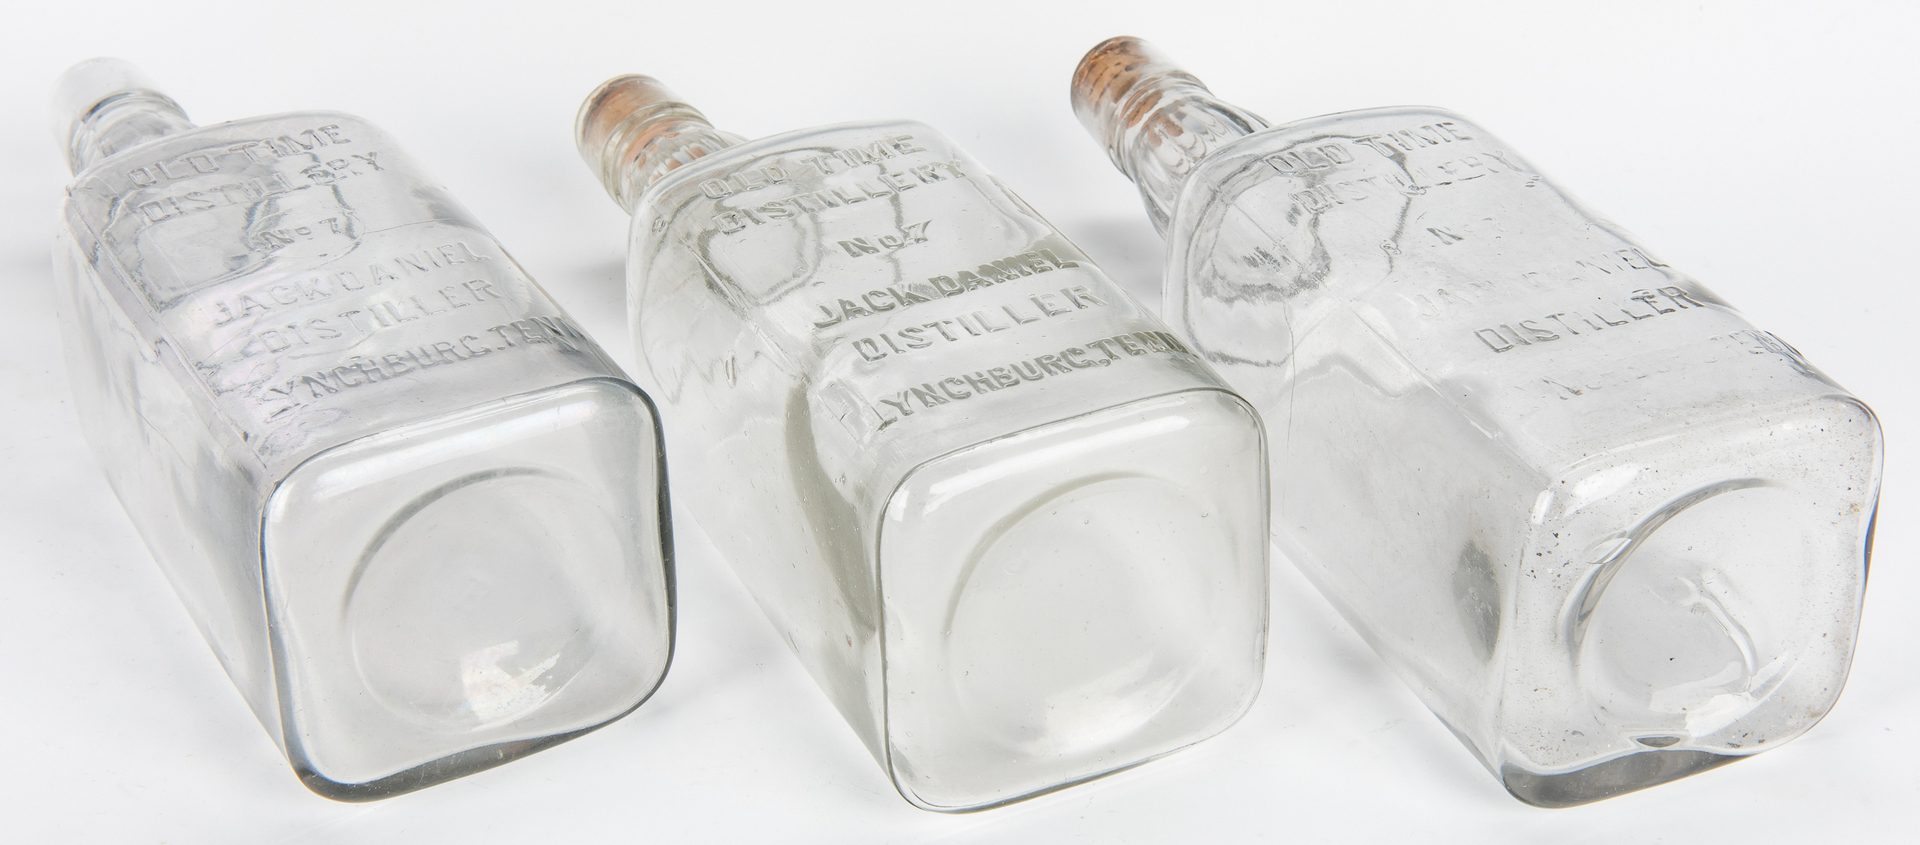 Lot 796: 3 Jack Daniels Whiskey Bottles, Silverplate Holder & 2 More